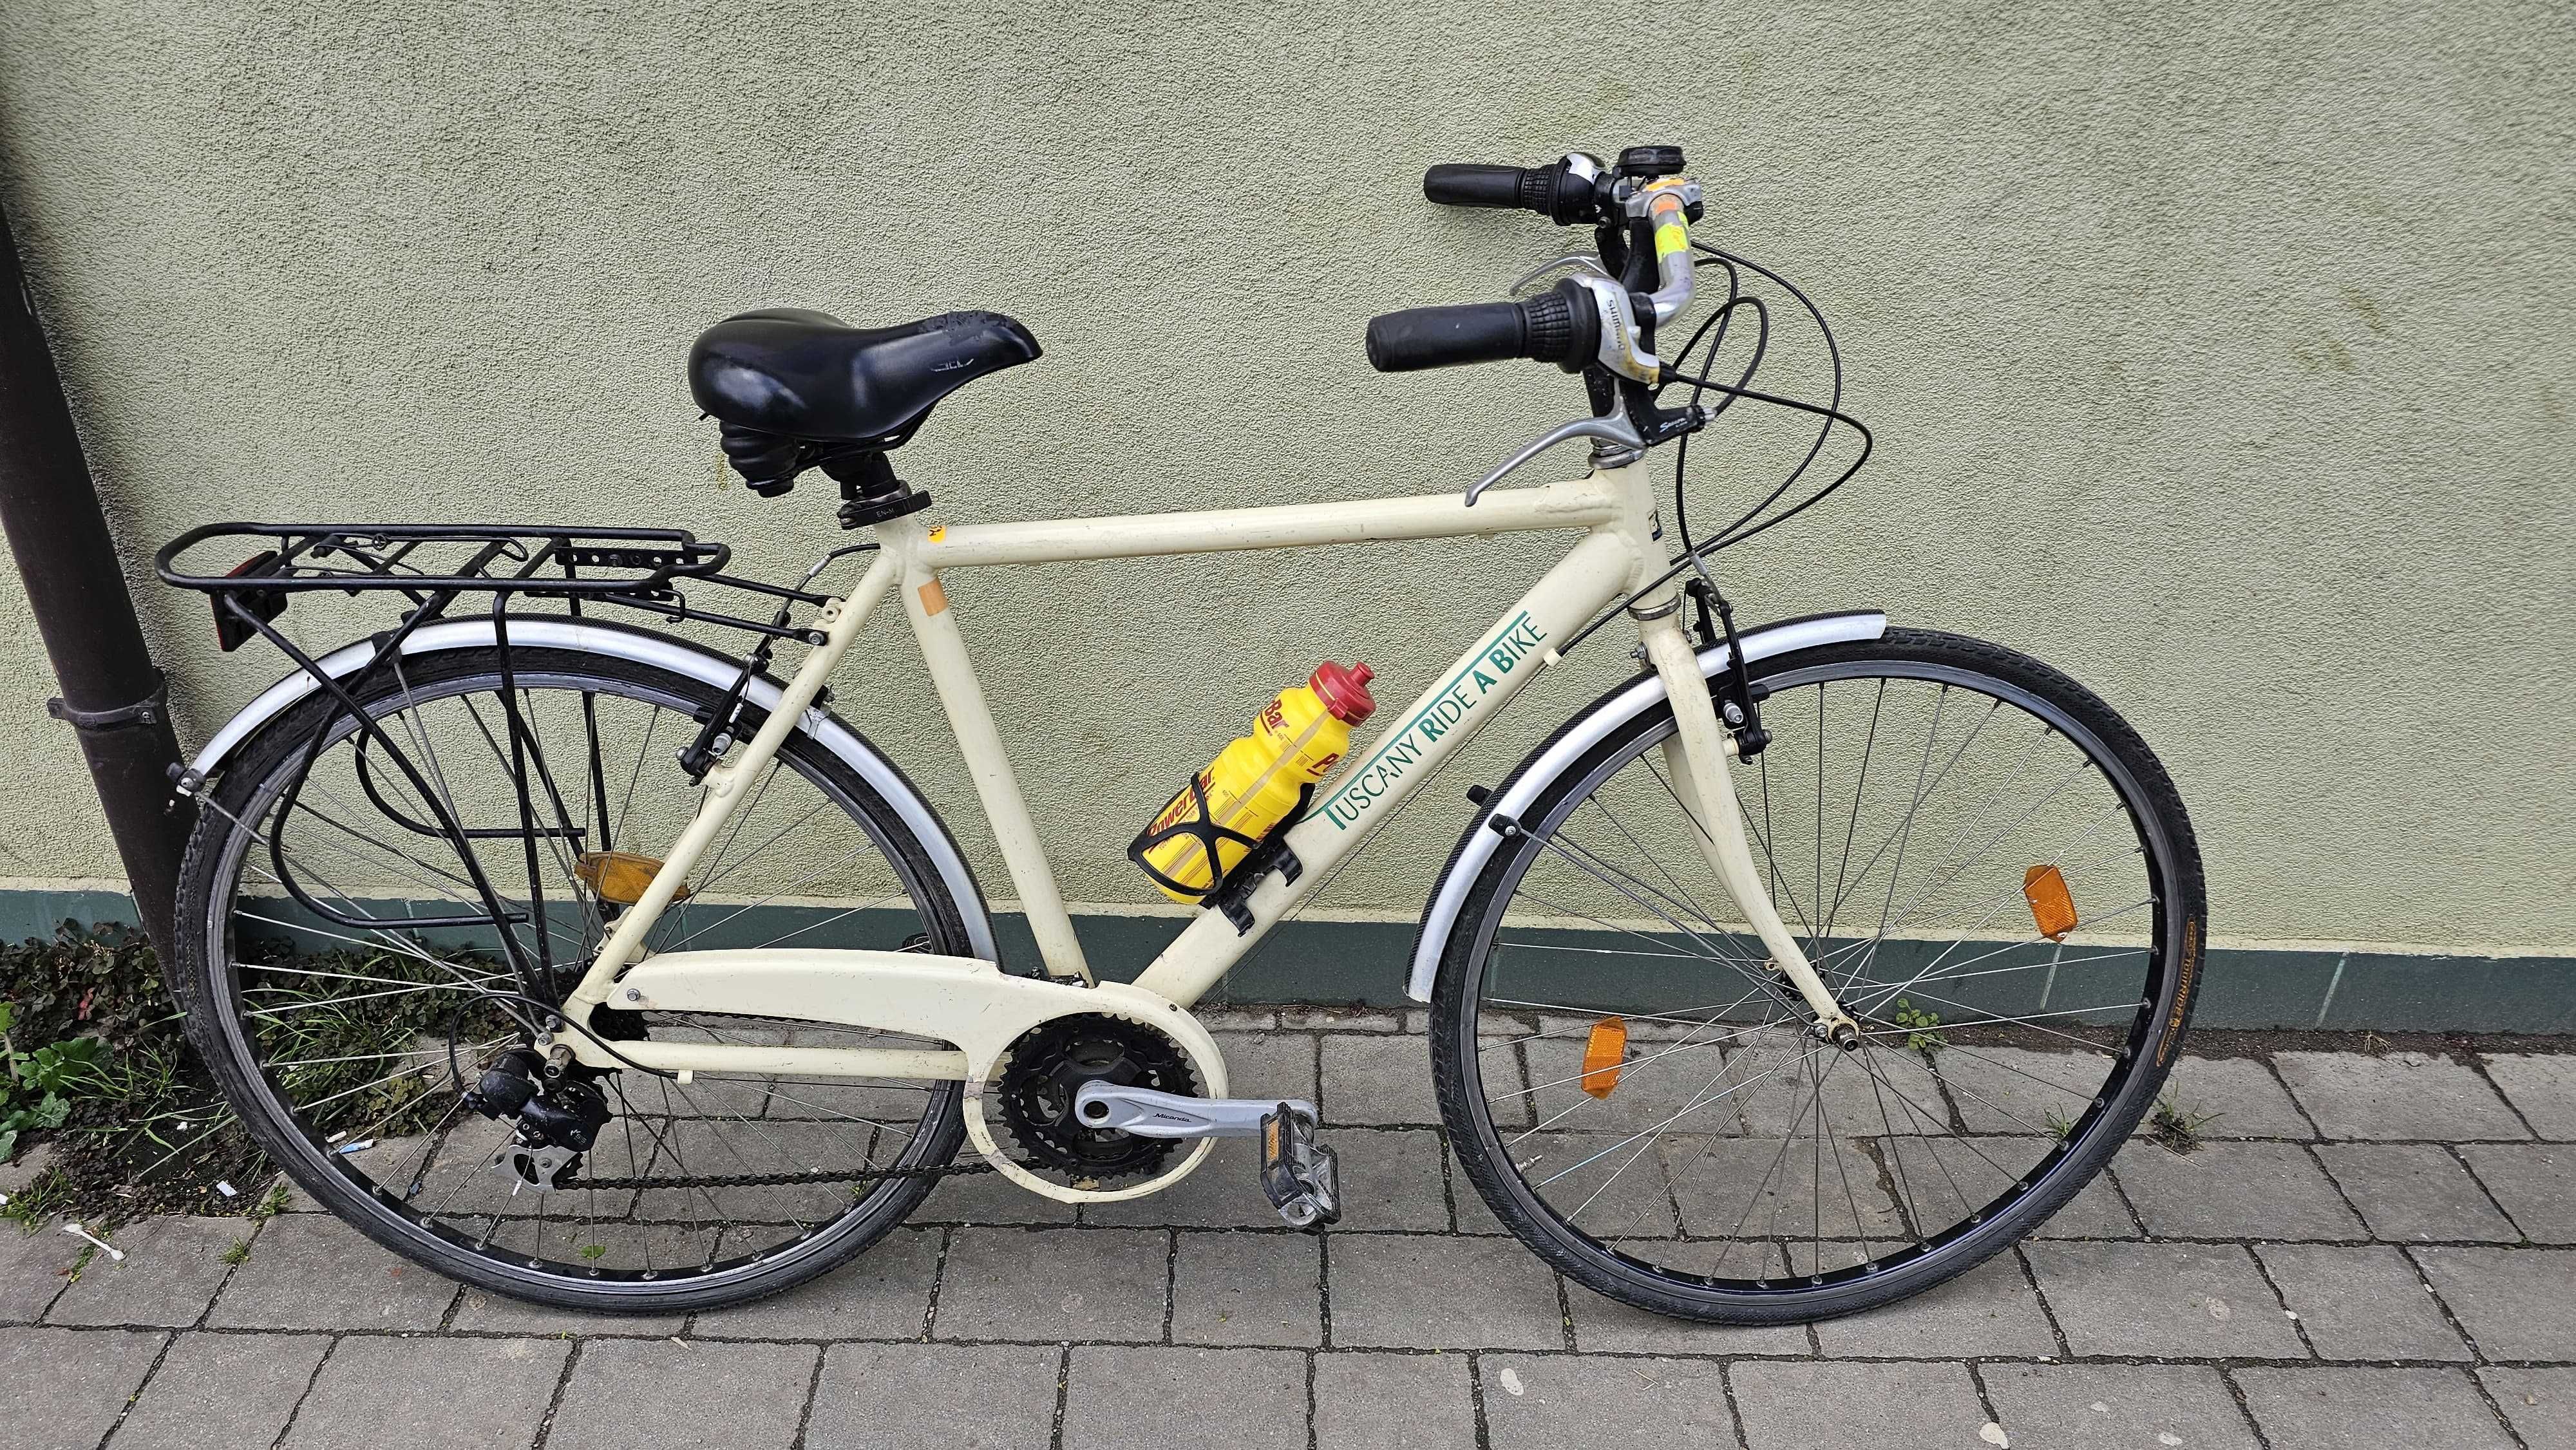 Vand biciclete 28" Inchi City/Treking/Fittnes Aluminiu reconditionate